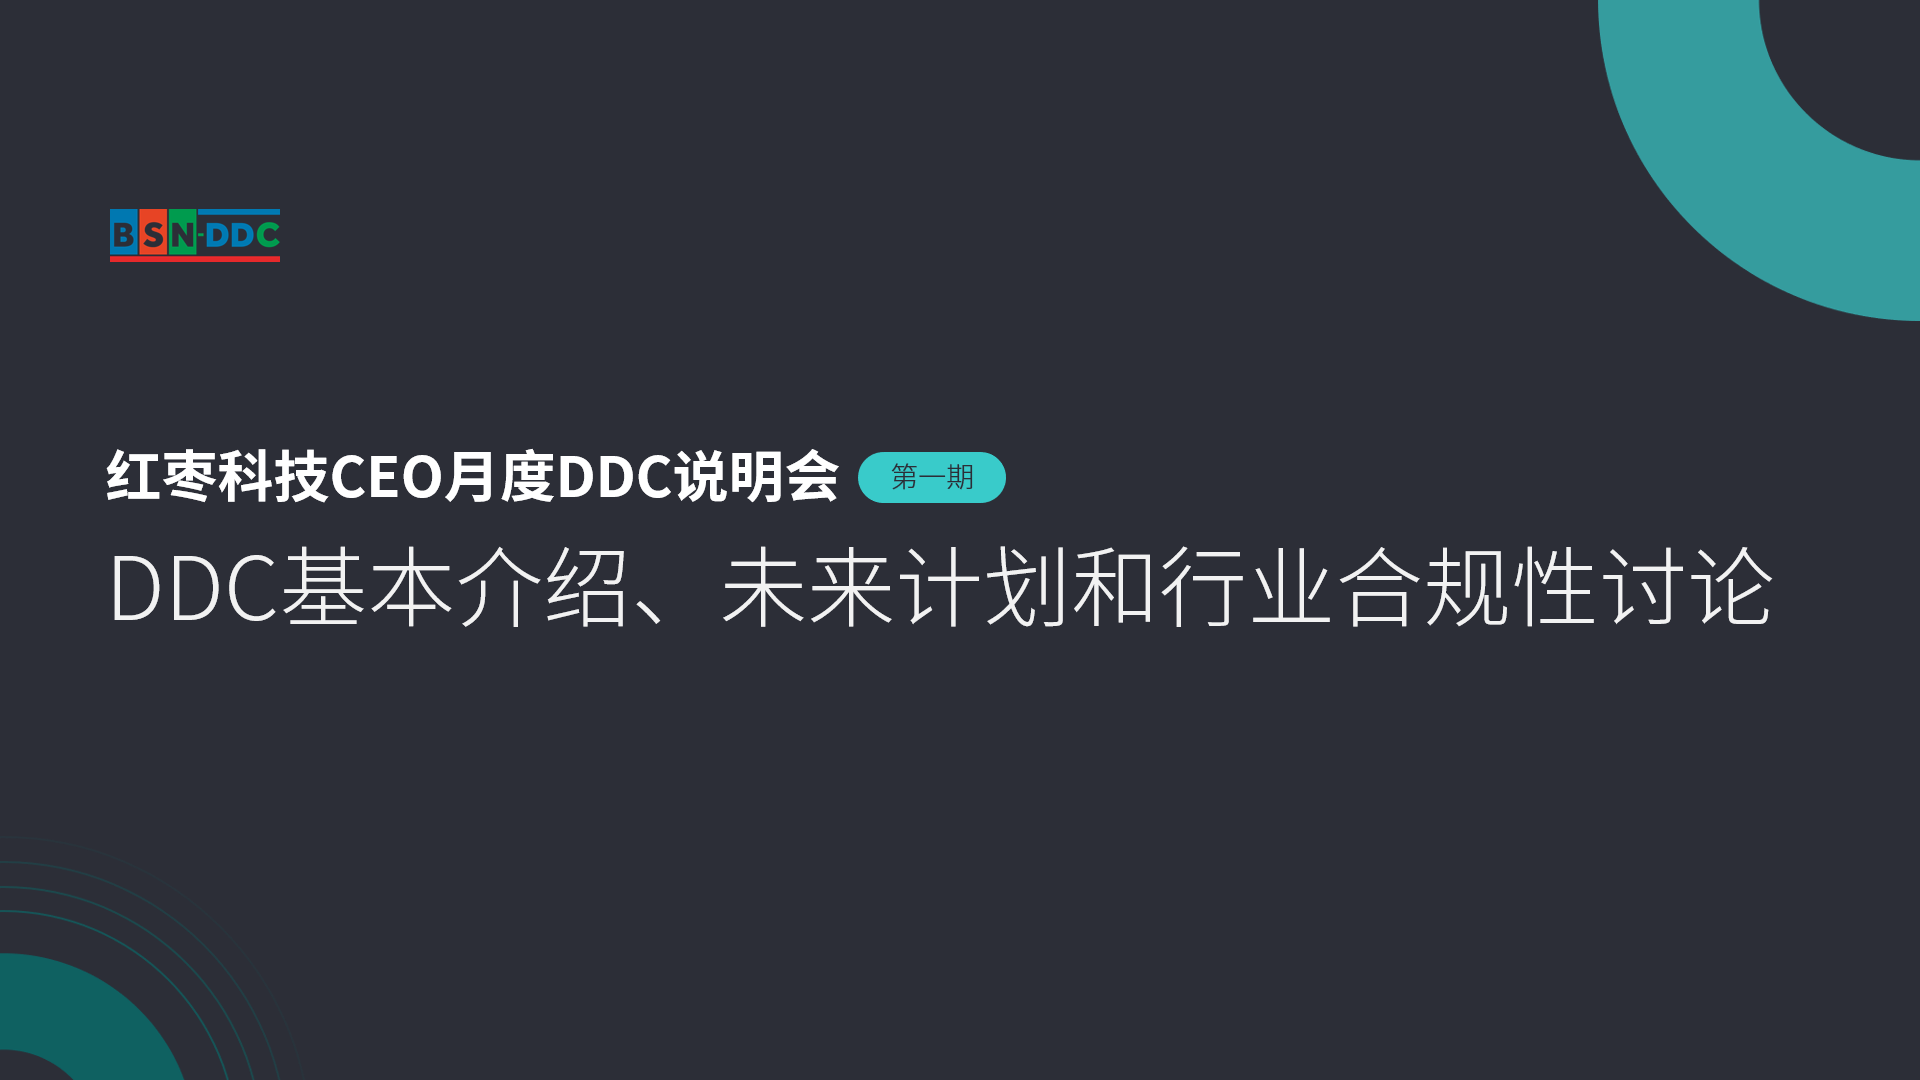 红枣科技CEO月度DDC说明会（第一期）——DDC基本介绍、未来规划、行业合规性讨论精华回顾